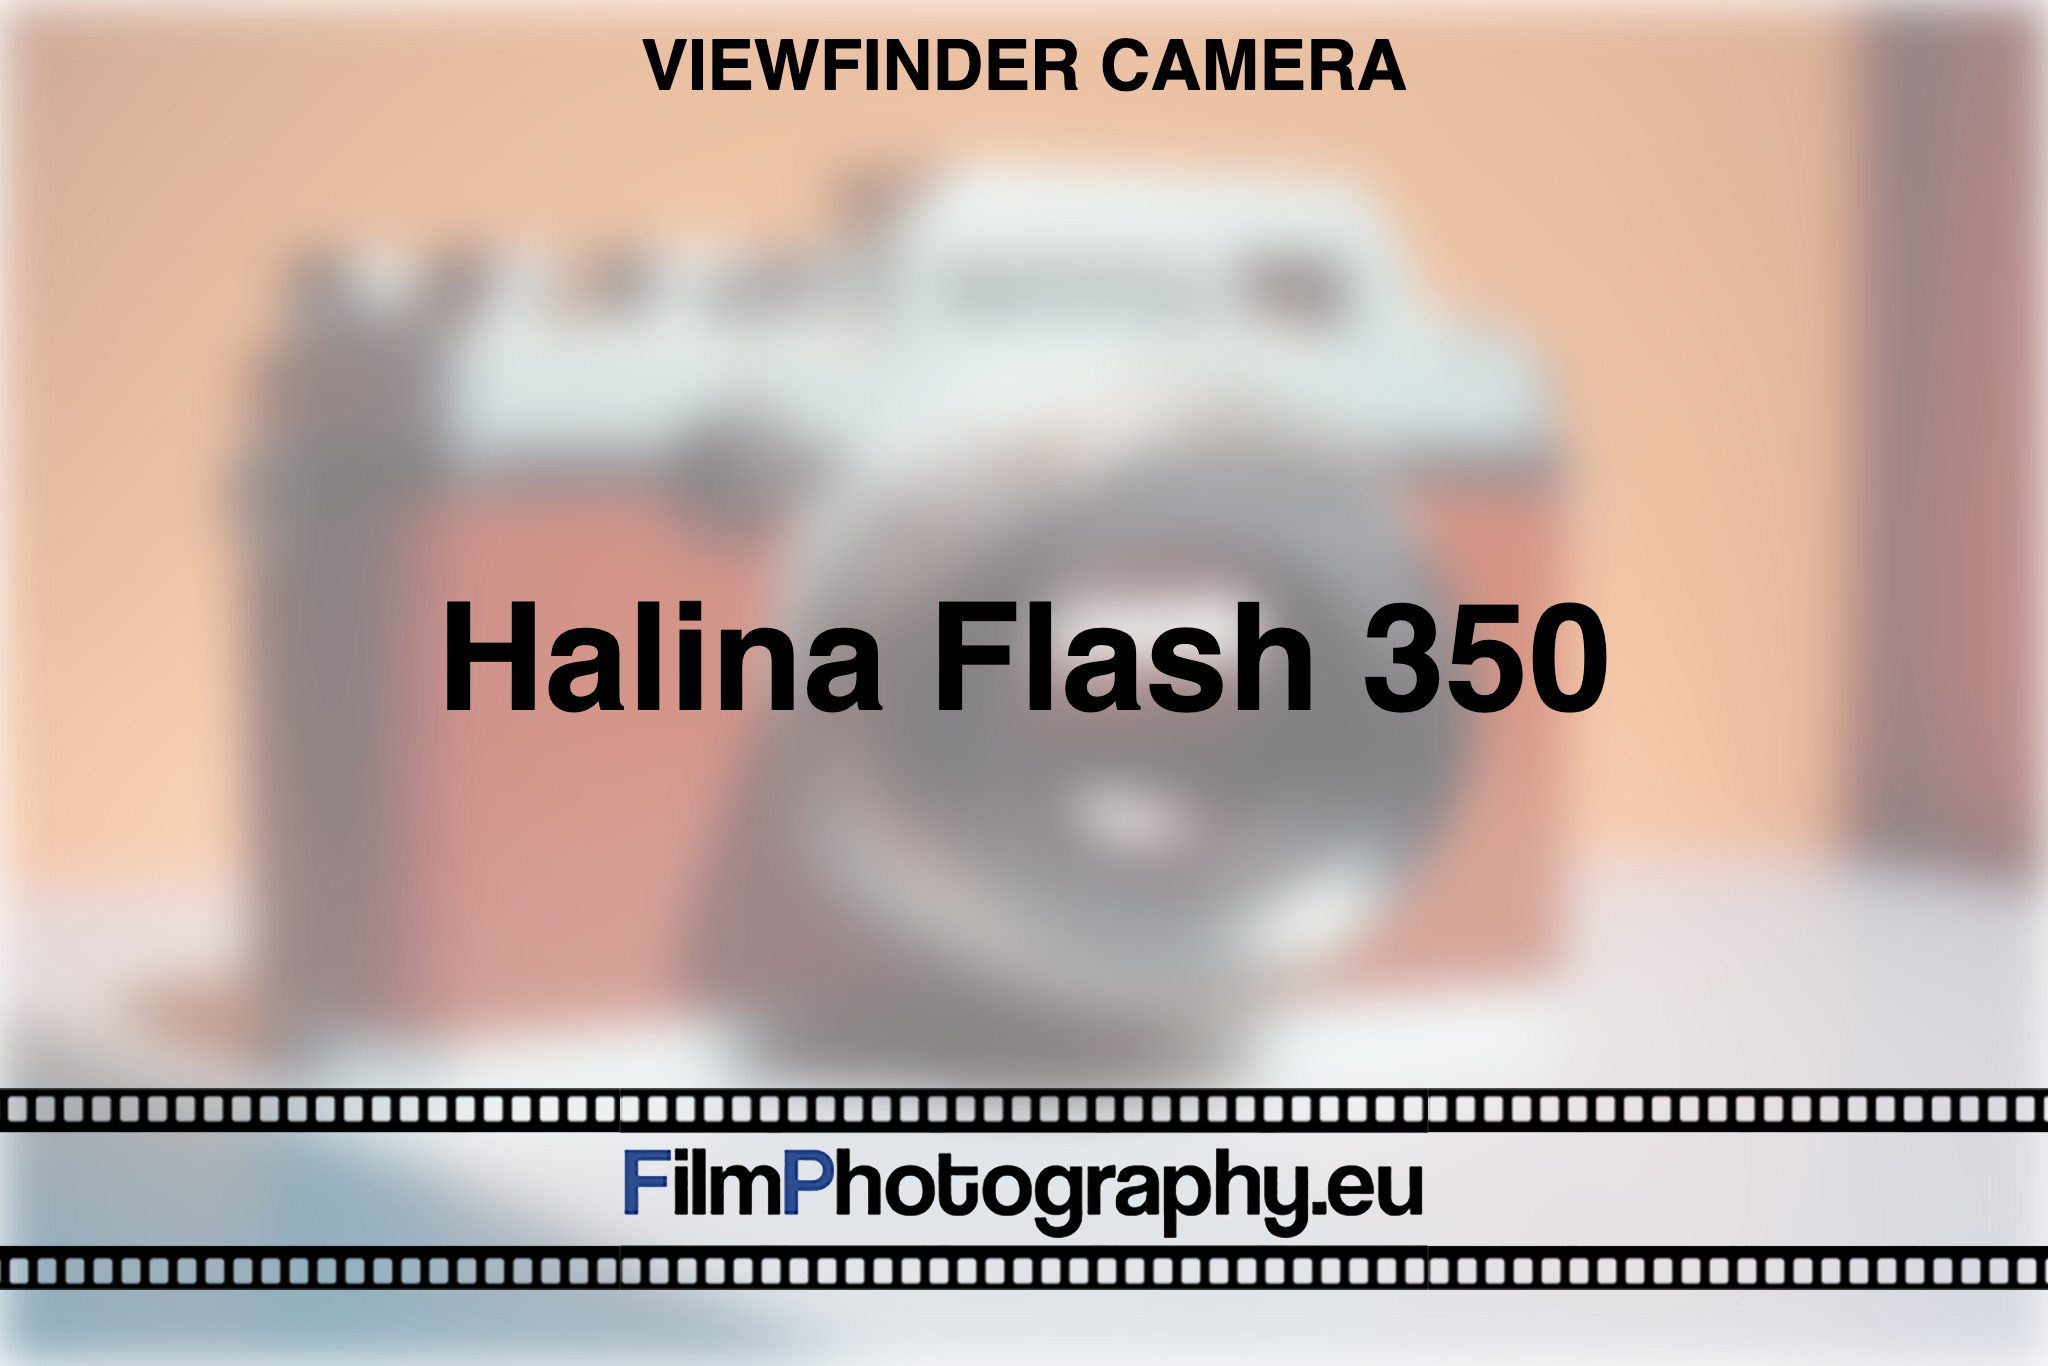 halina-flash-350-viewfinder-camera-bnv